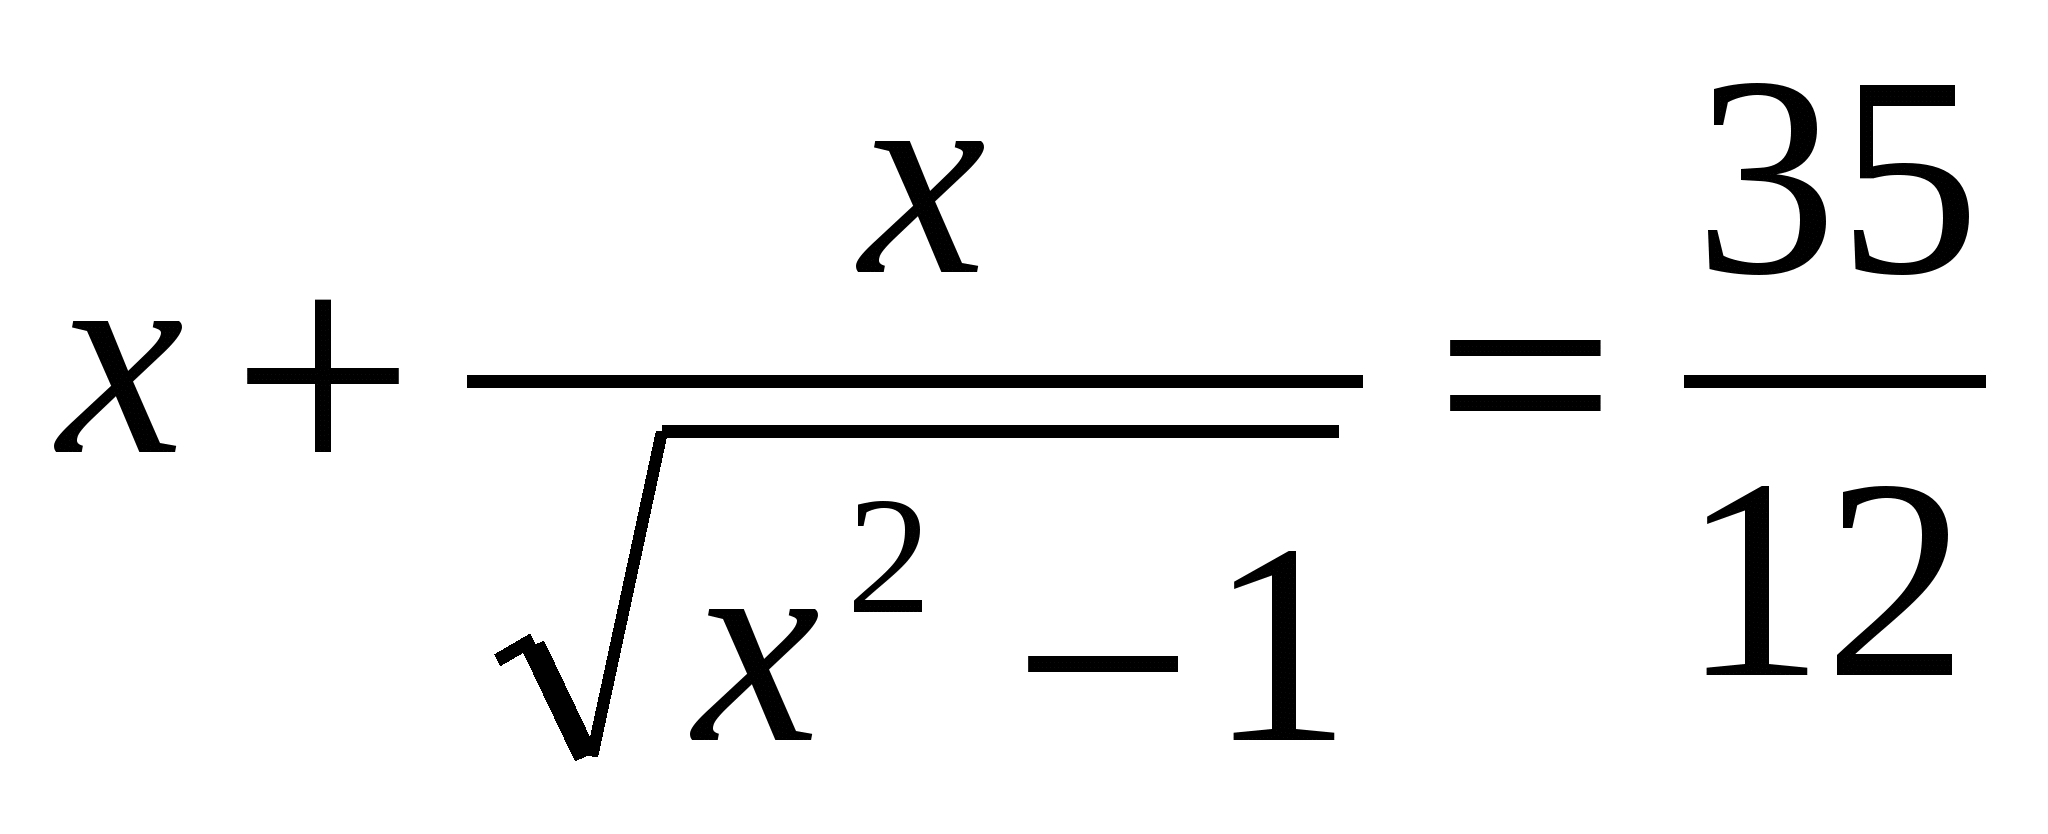 Программа элективных курсов по математике Нестандартные приемы решения нестандартных уравнений и неравенств